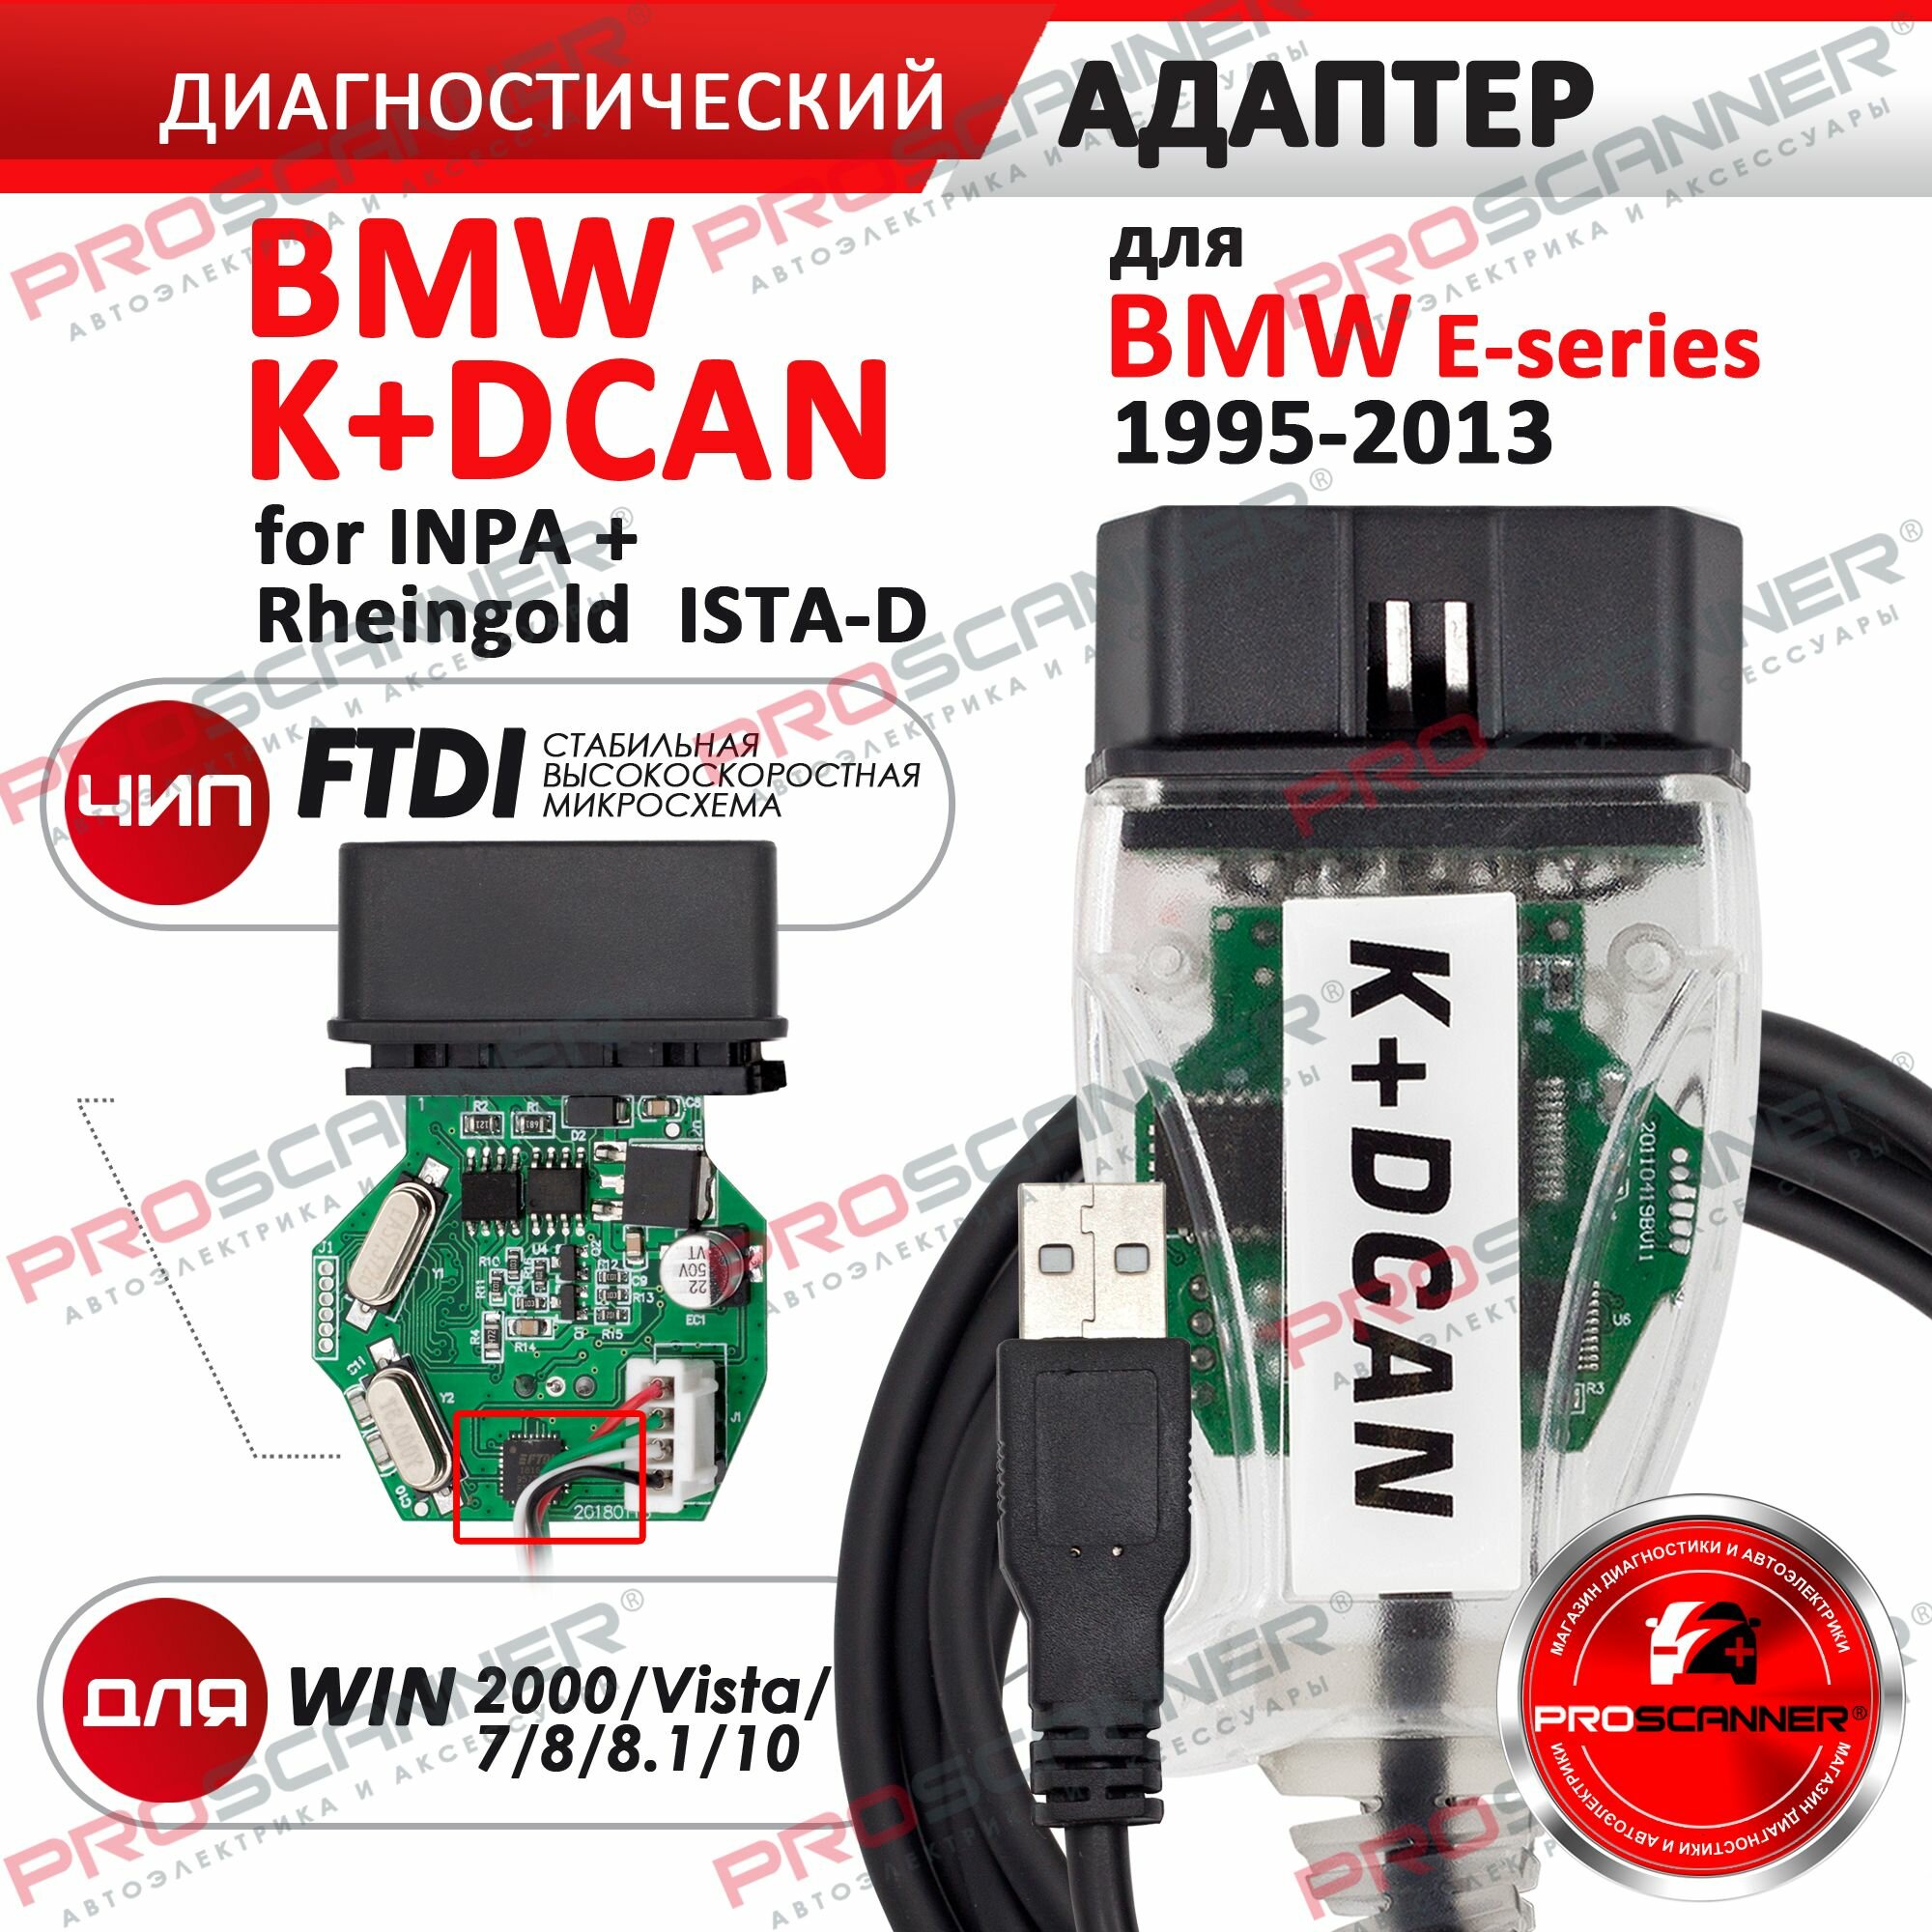 Автосканер K+DCAN (новая версия) с переключателем для E - серий 1995-2013 год / Адаптер для диагностики